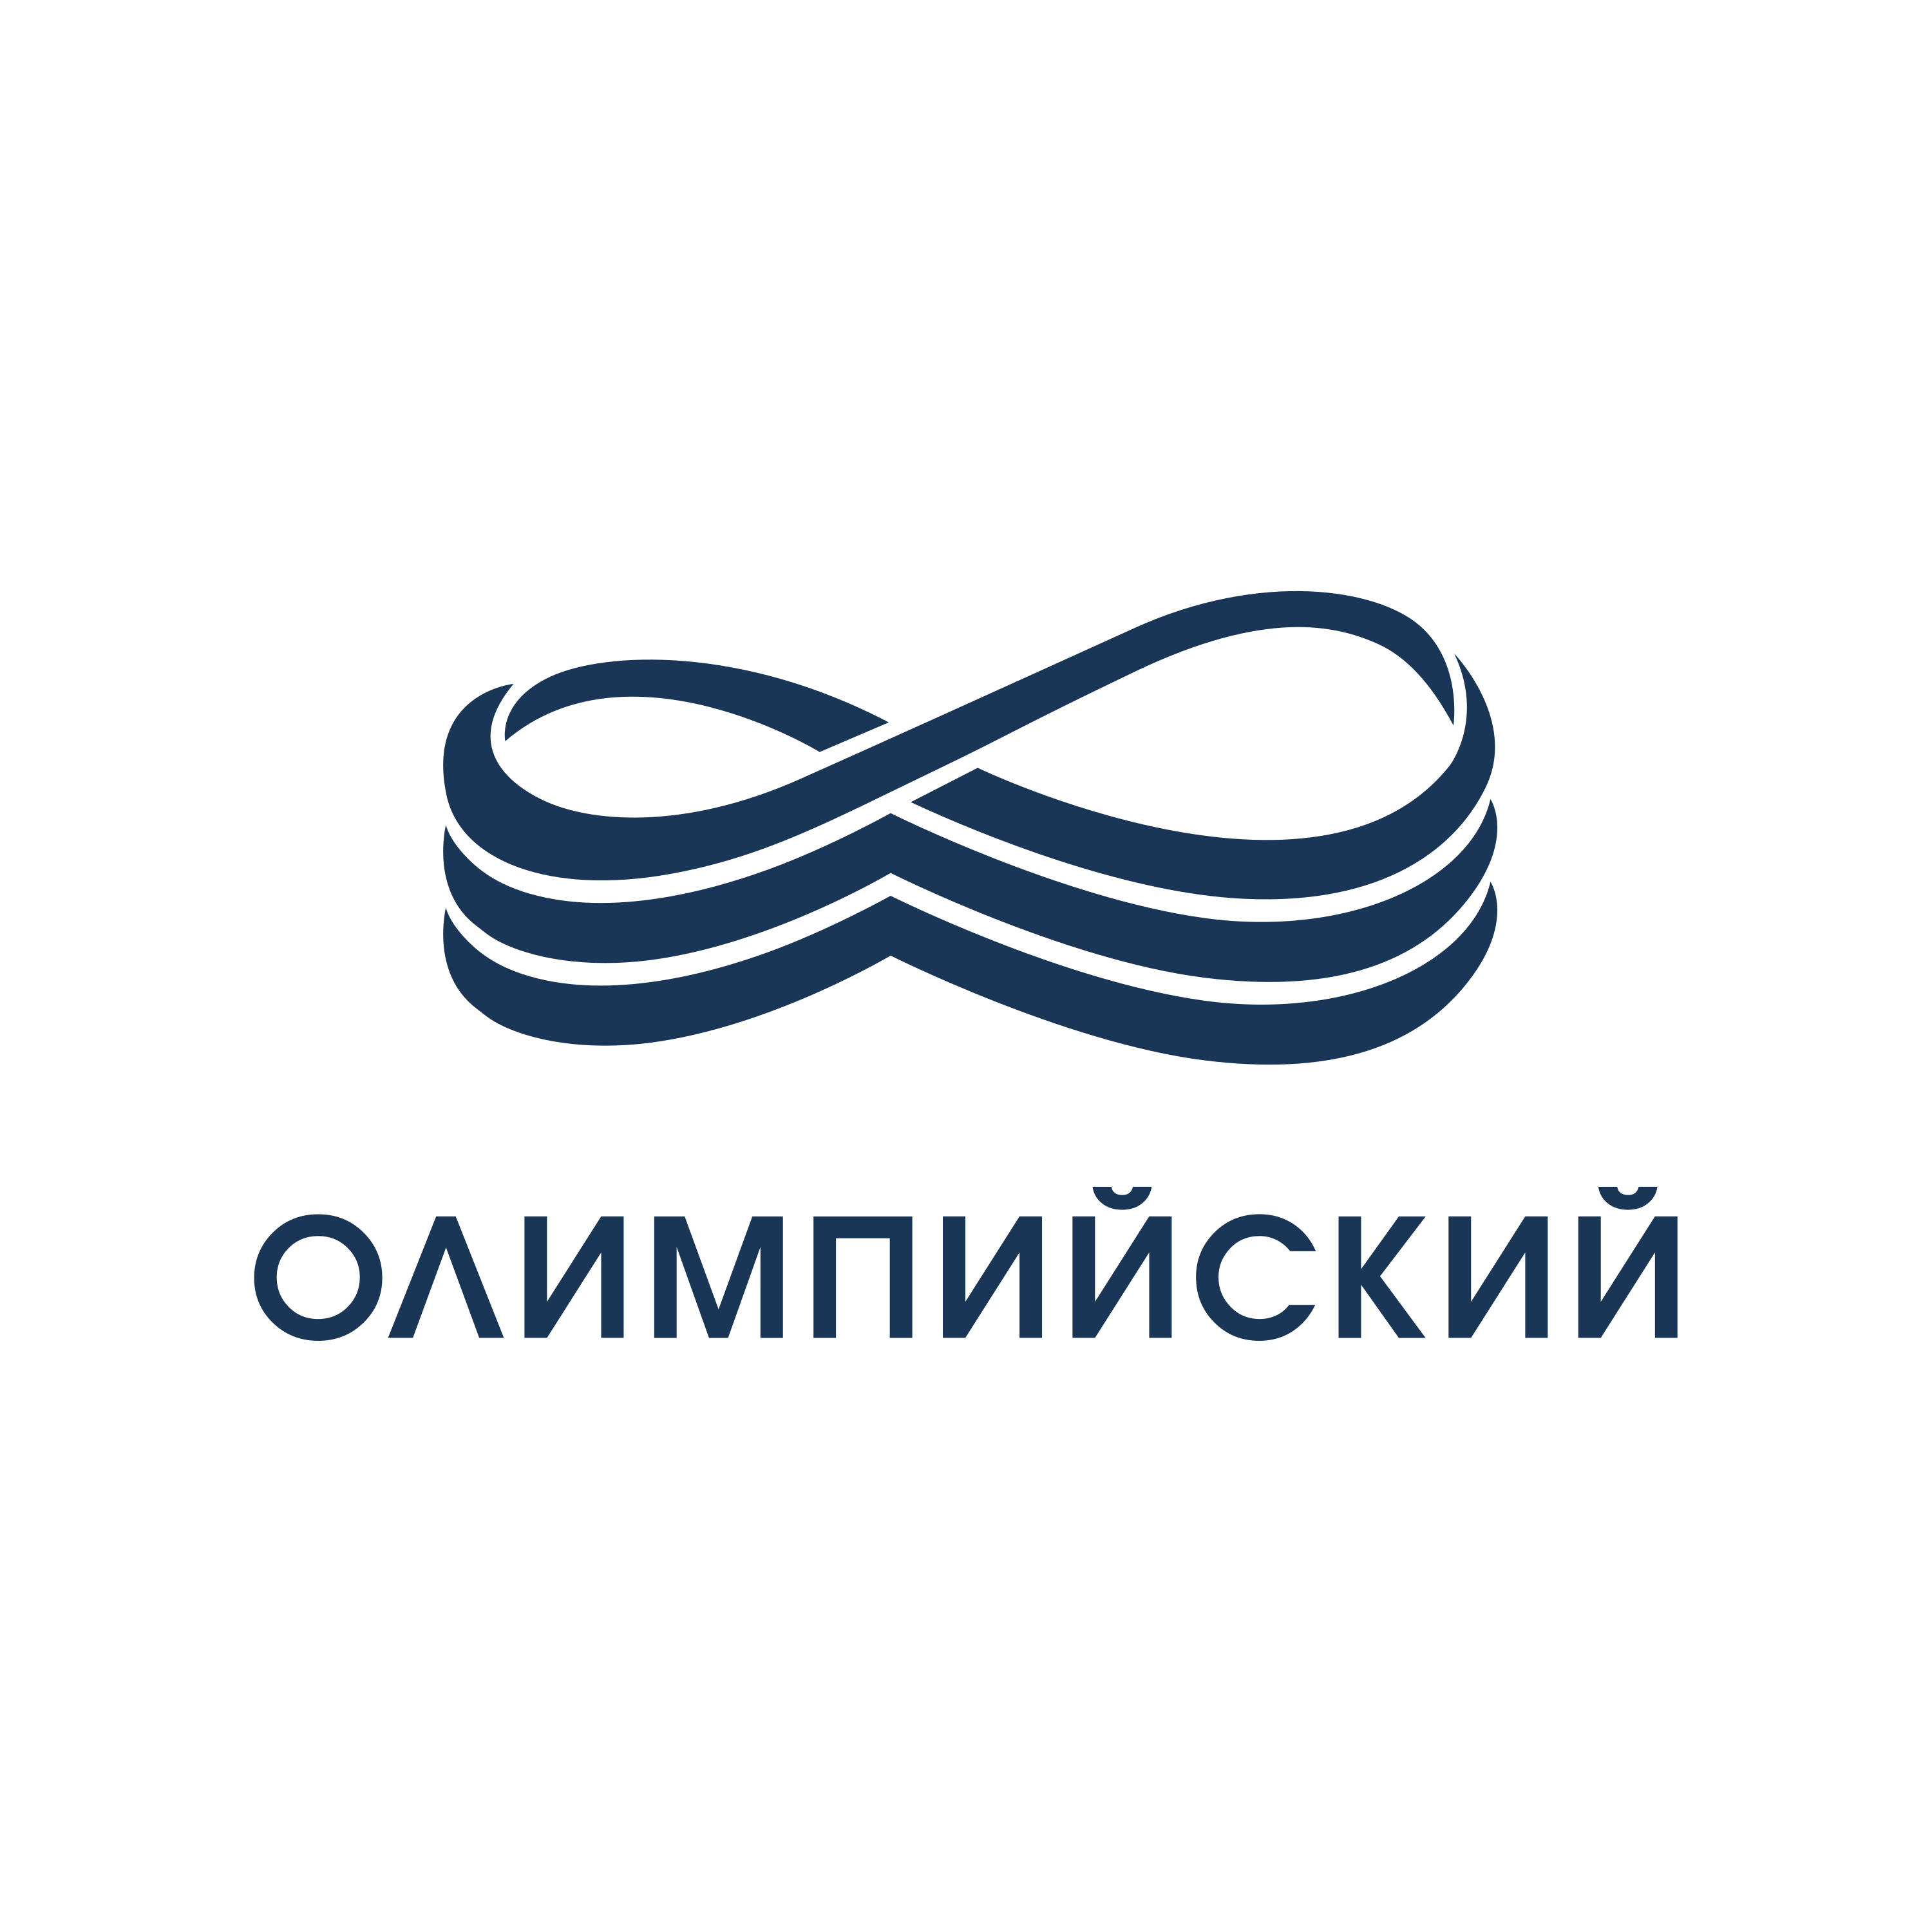 Olimpiyskiy Logo  Transparent Image